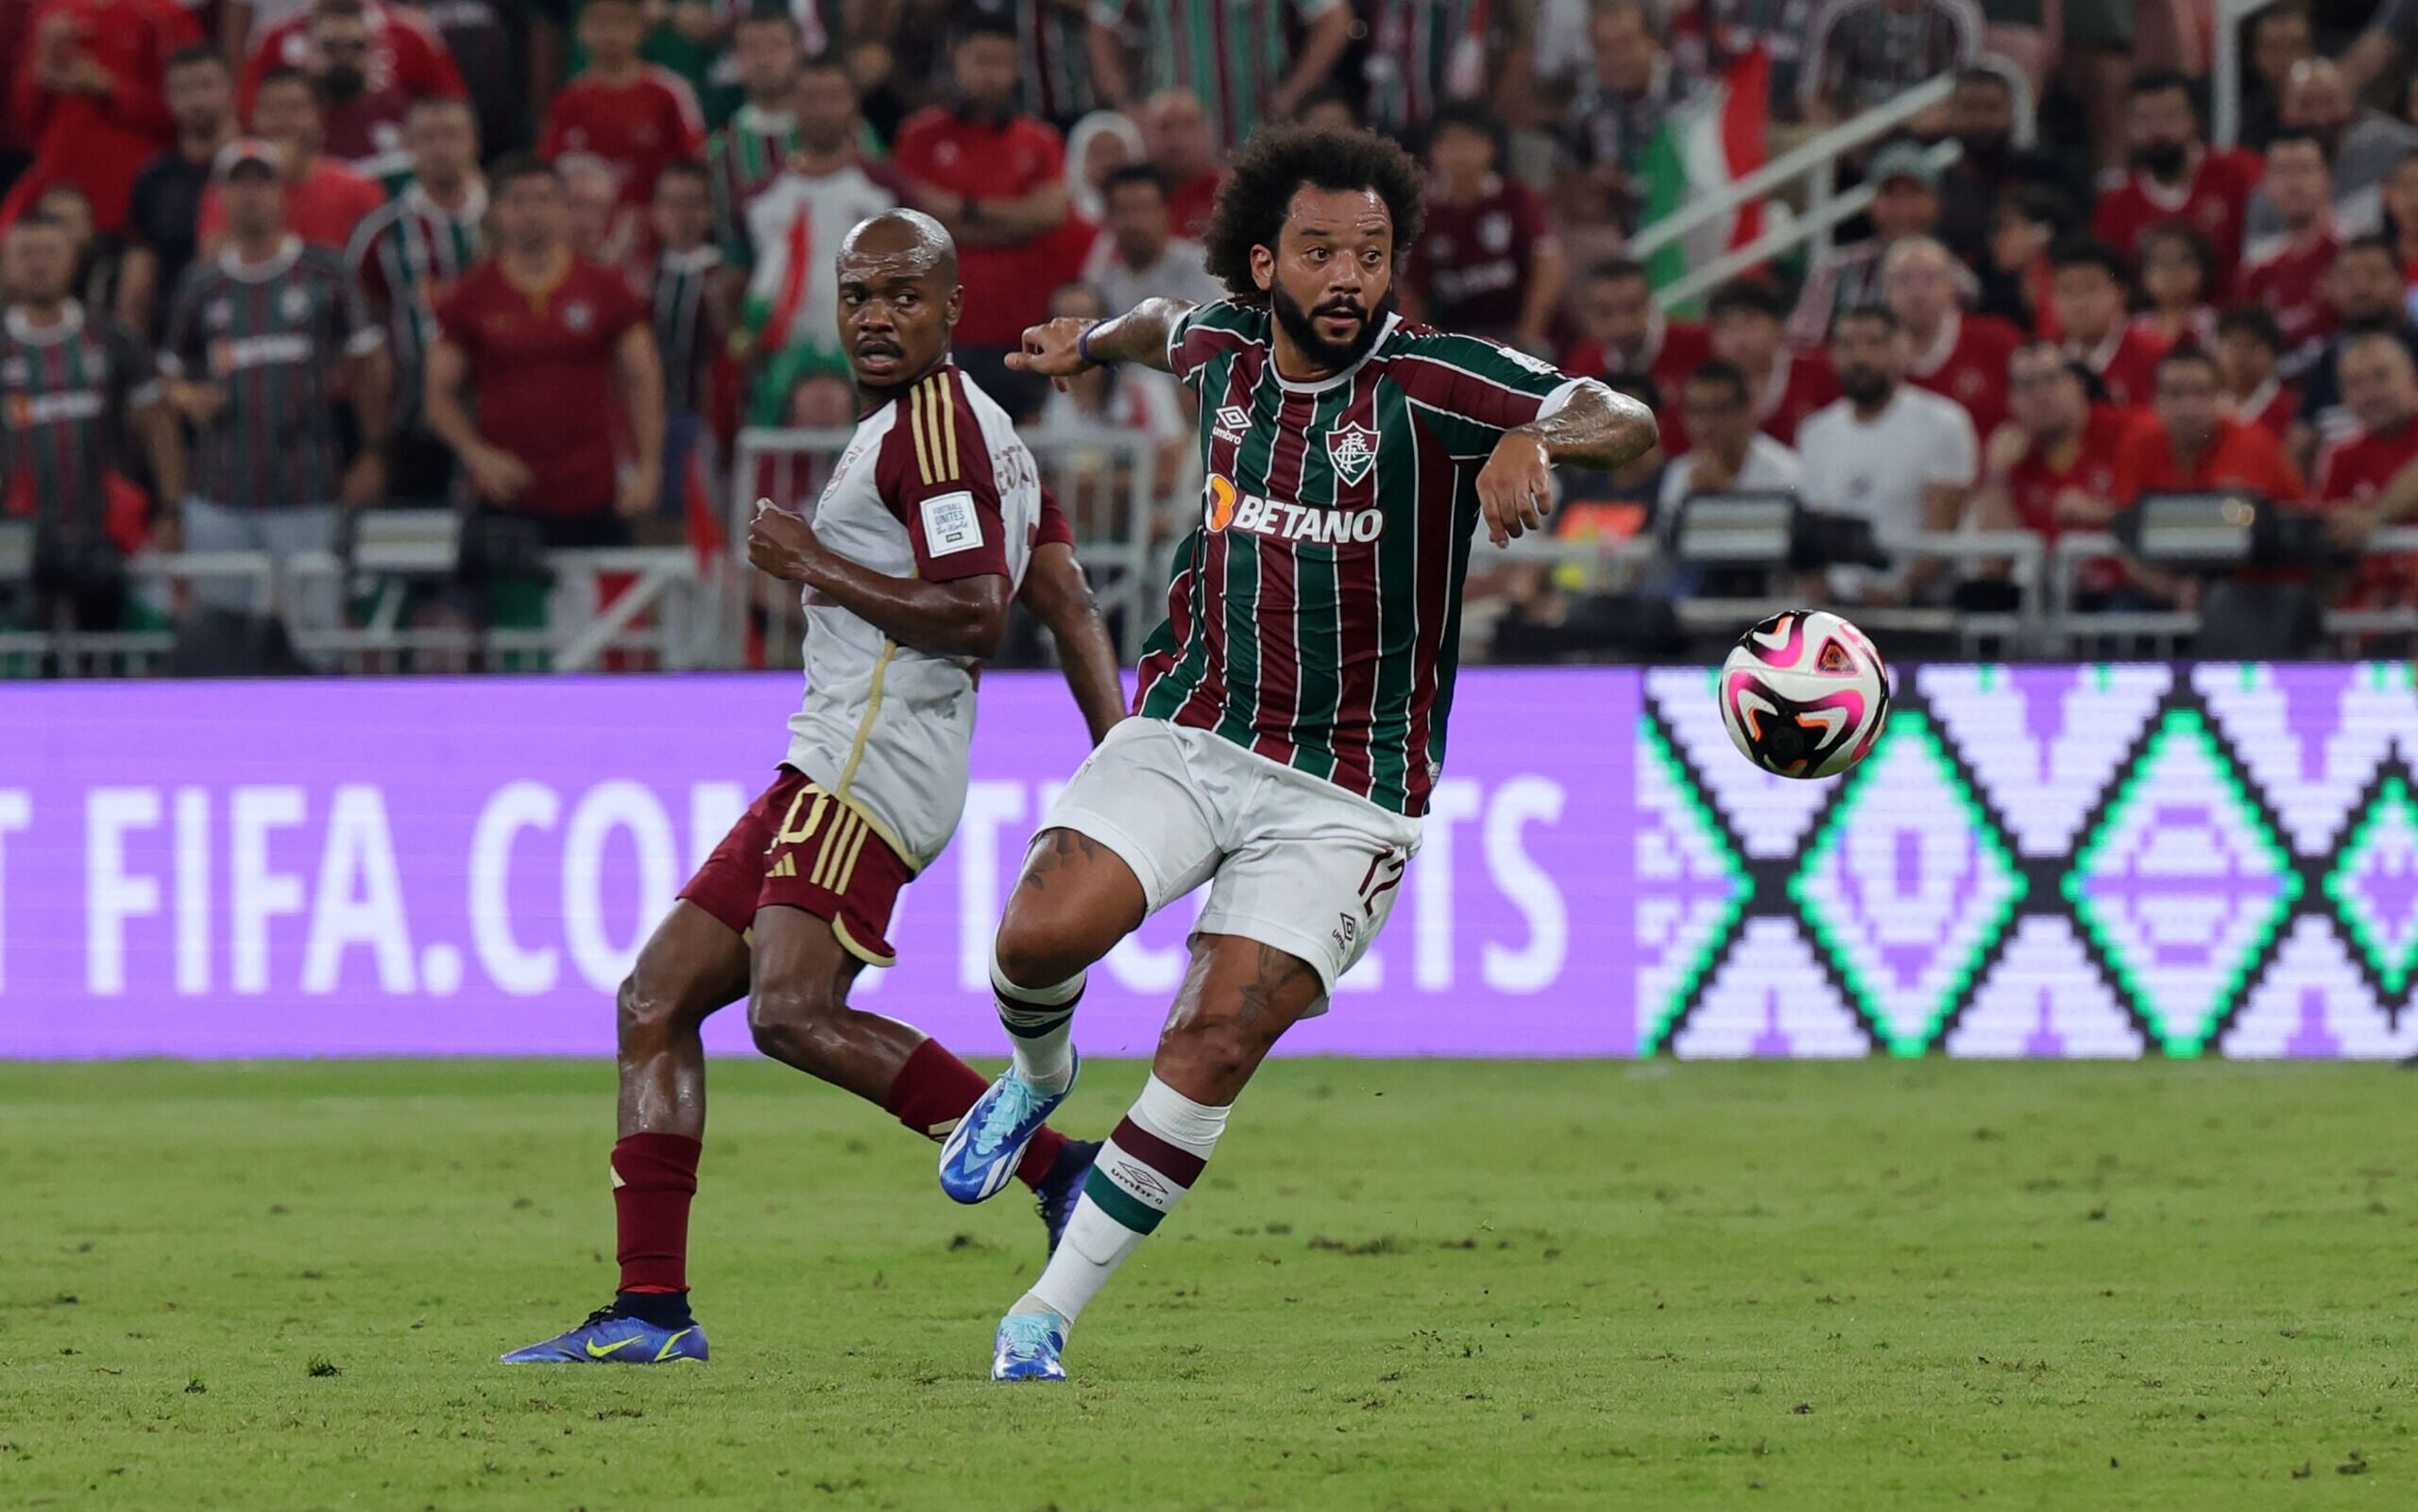 Fluminense, Últimas notícias, resultados e próximos jogos